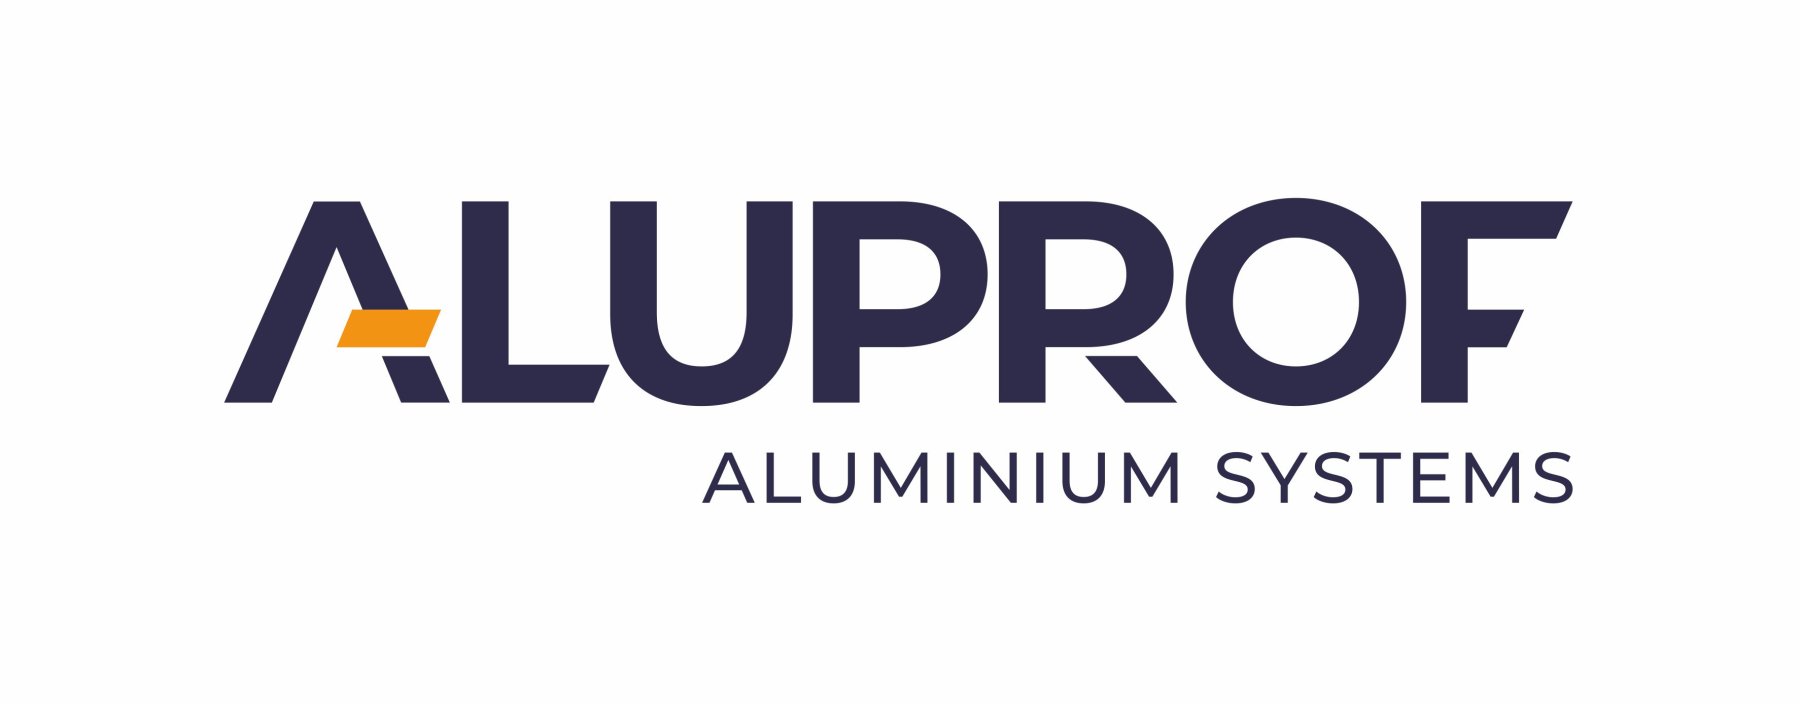 logo_aluprof_aluminiumsystems-logo - 